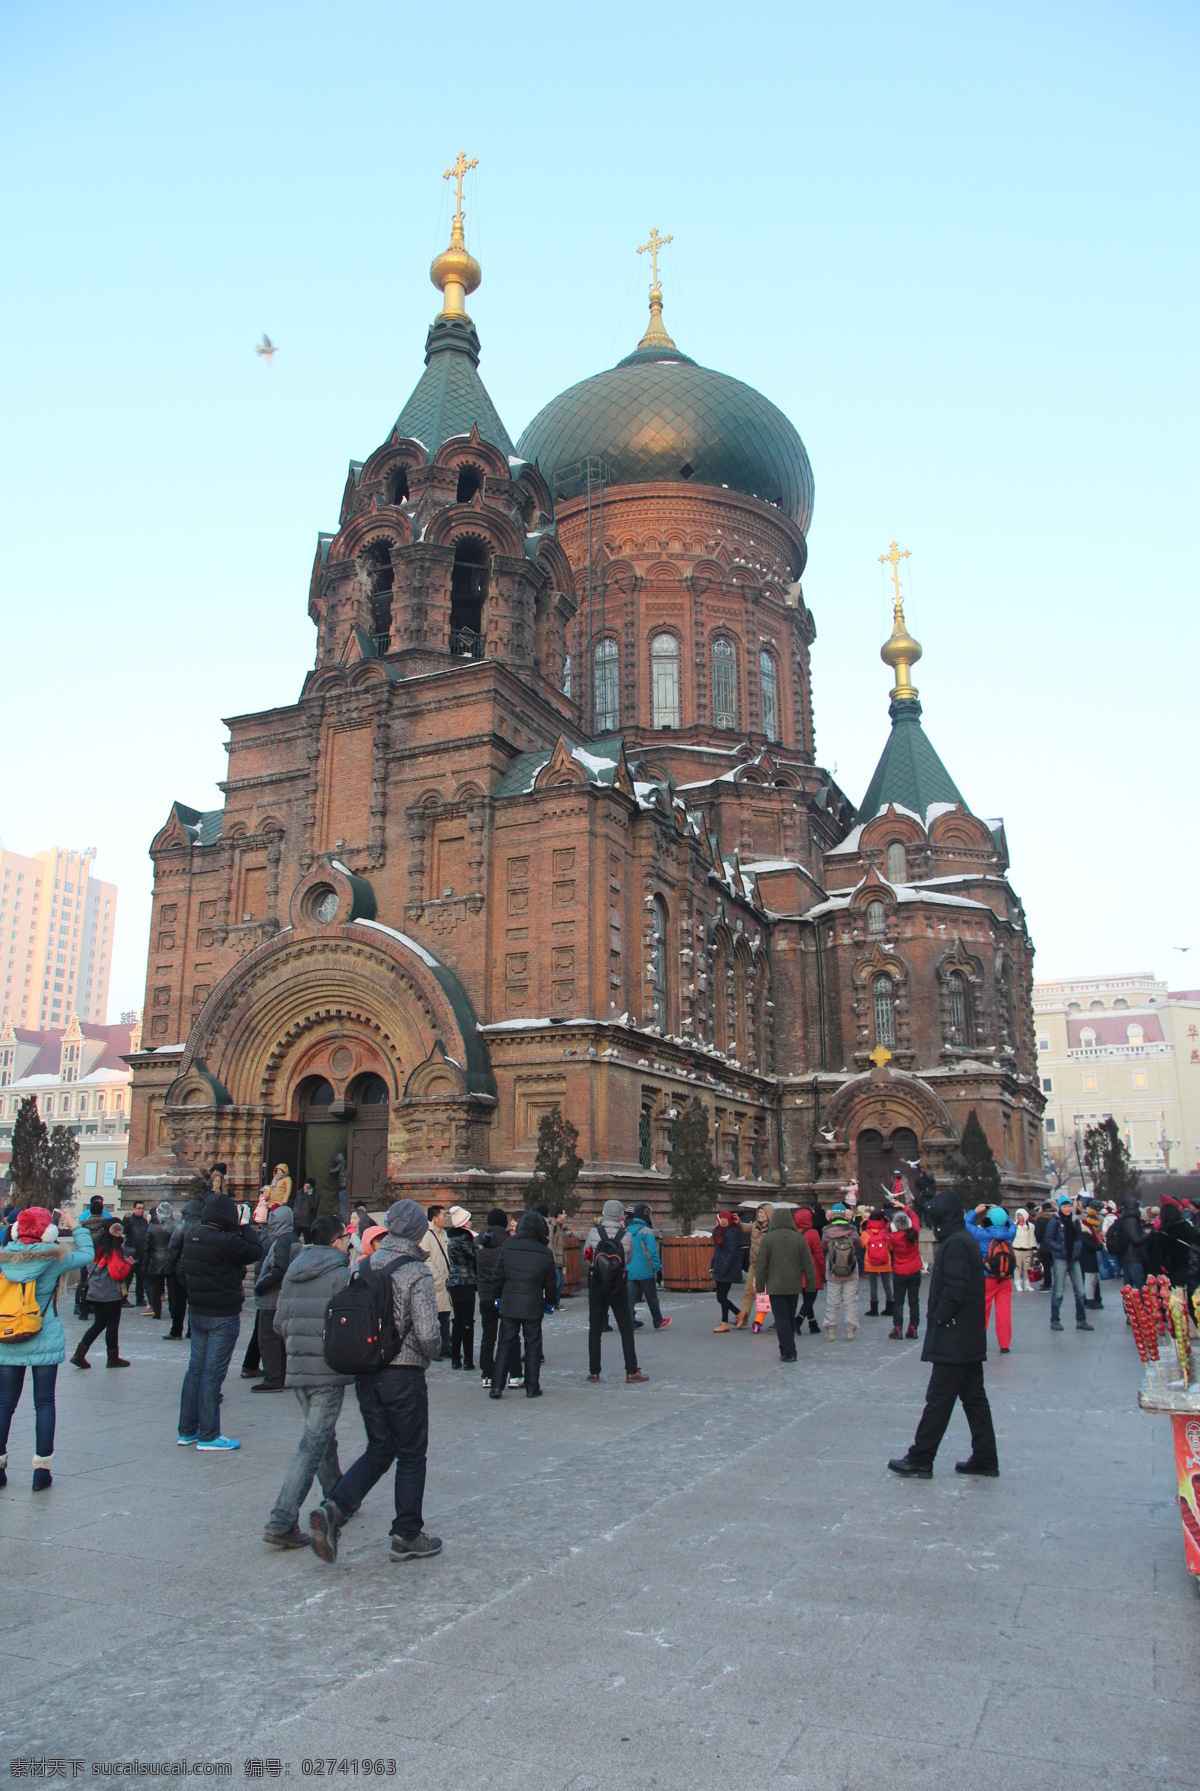 哈尔滨 索菲亚 教堂 蓝天 俄罗斯建筑 欧洲风情 东方小莫斯科 哈尔滨风景 国内旅游 旅游摄影